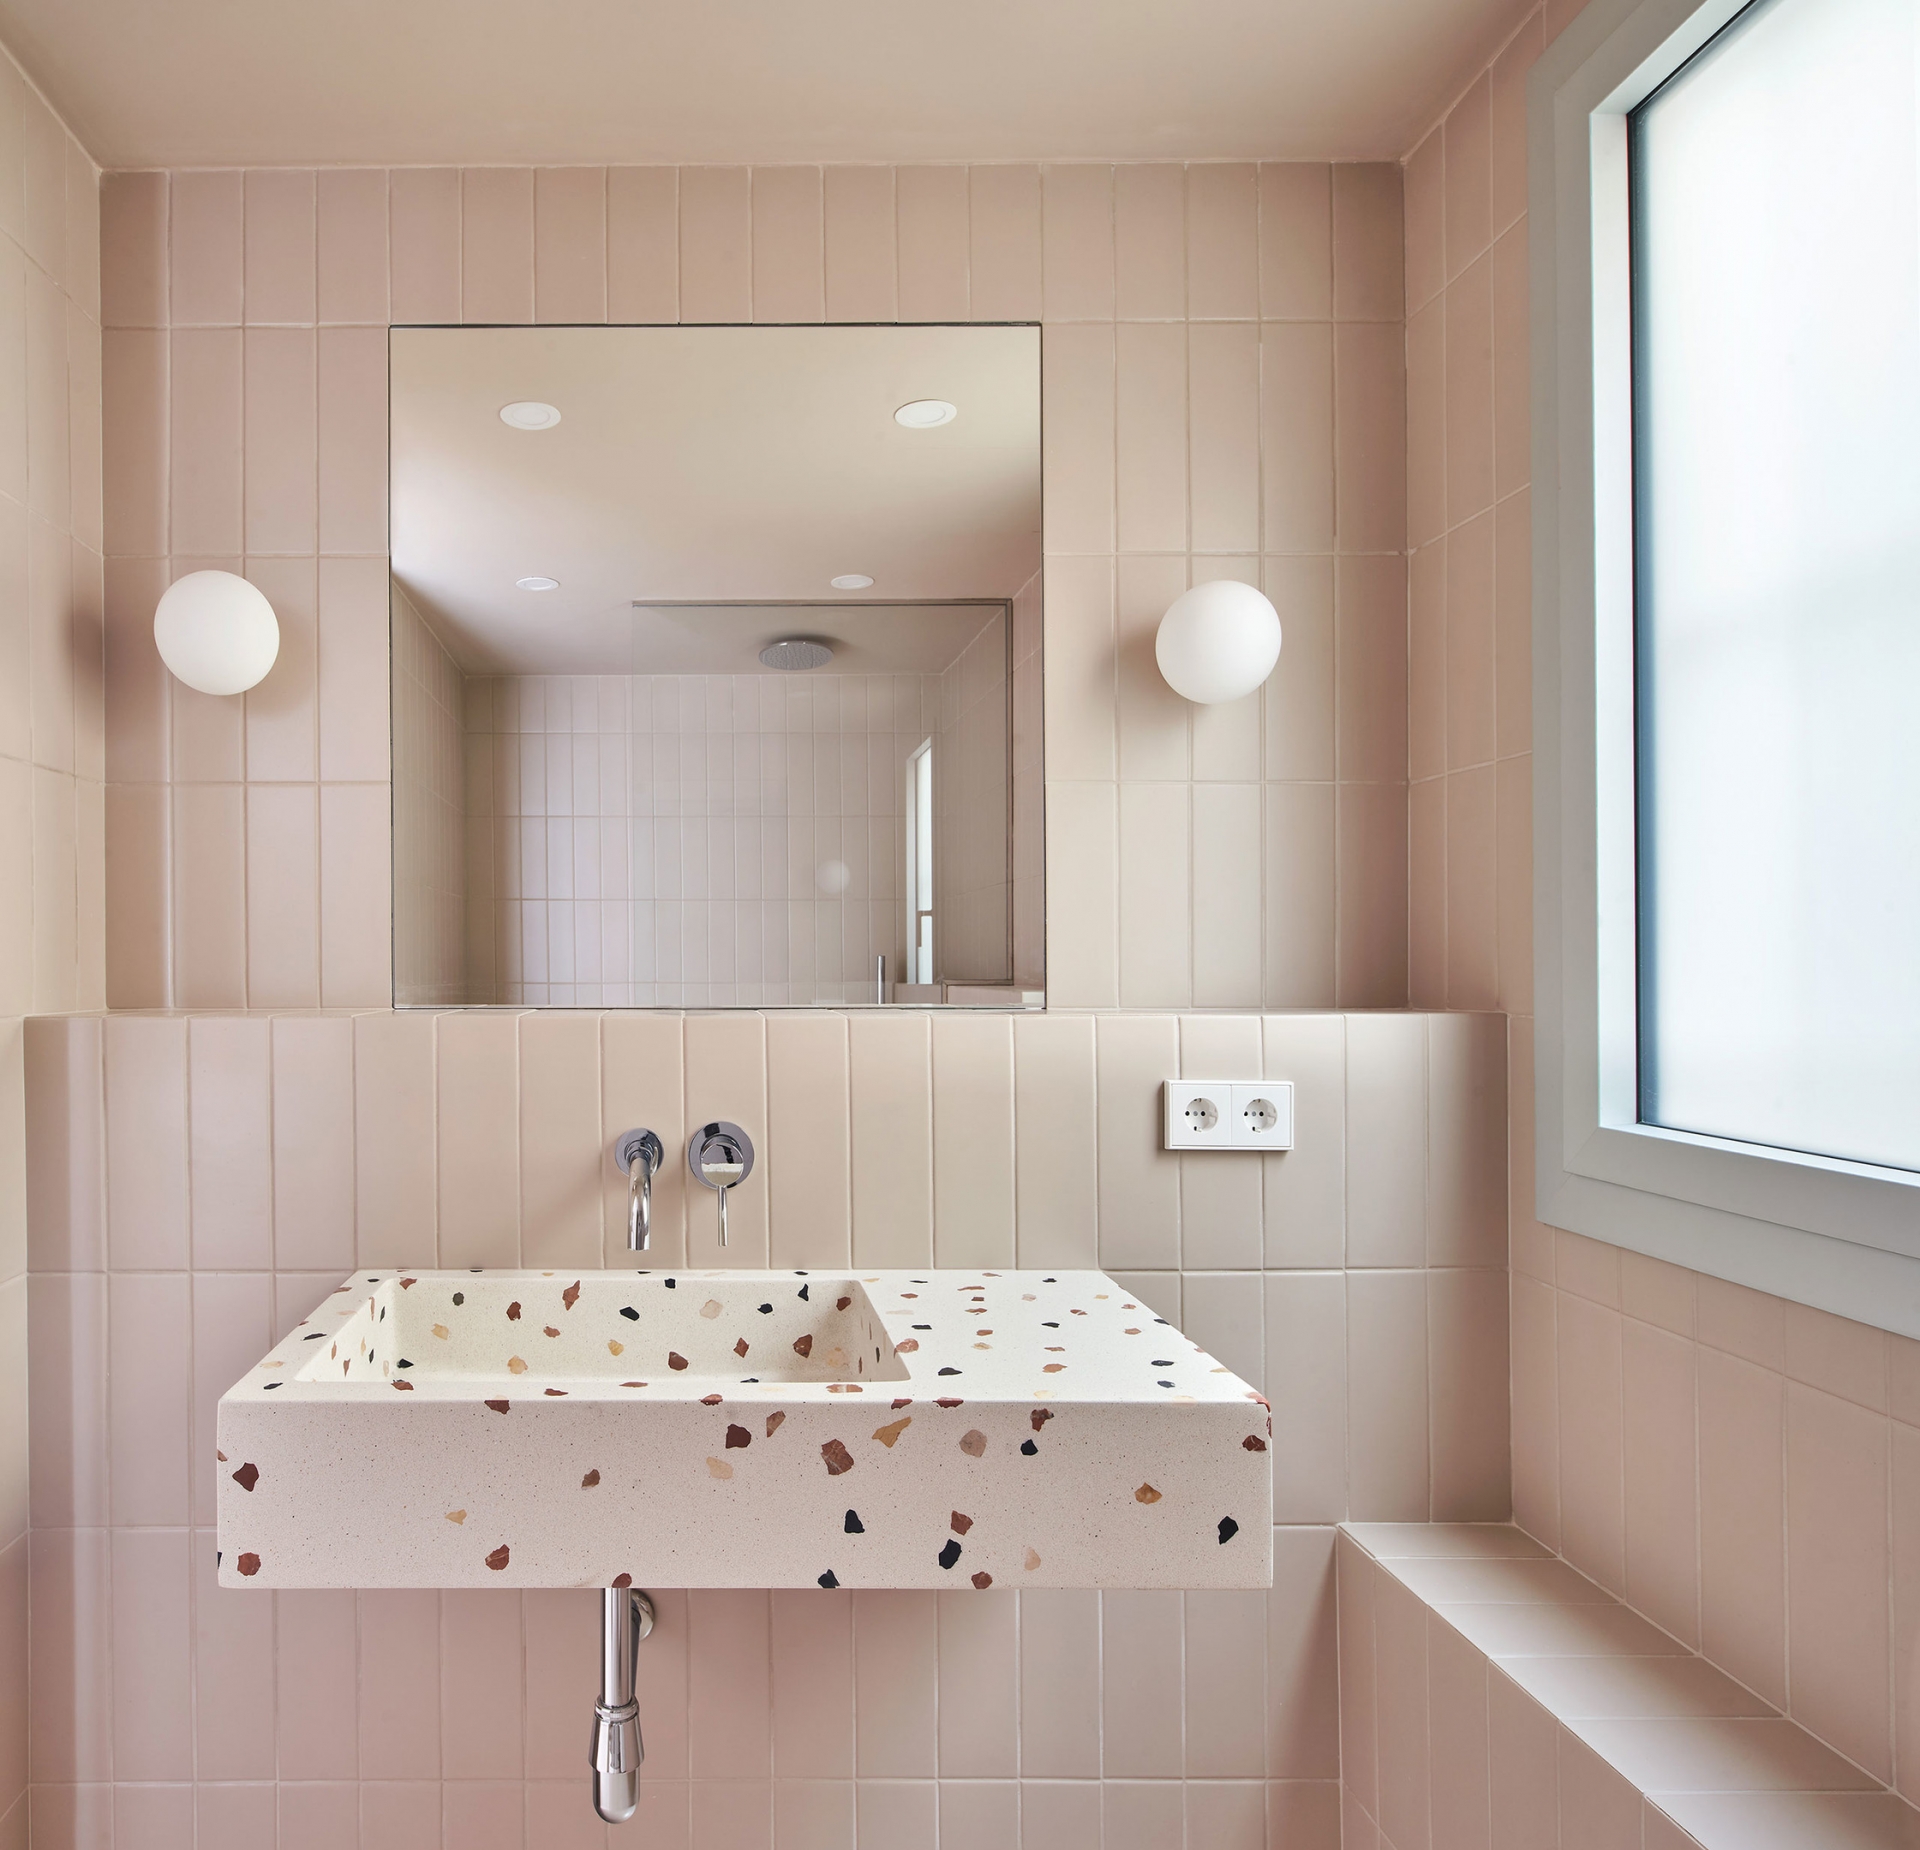 Nếu phòng tắm ở trên là sự chia đôi giữa gạch ốp và sơn tường thì không gian này, NTK quyết định ốp 'full' tường màu hồng pastel cho vẻ đẹp nữ tính và ngọt ngào tuyệt đối. Chiếc bồn rửa họa tiết terrazzo cũng góp phần tạo nên điểm nhấn cho không gian bớt đi sự 'một màu'.